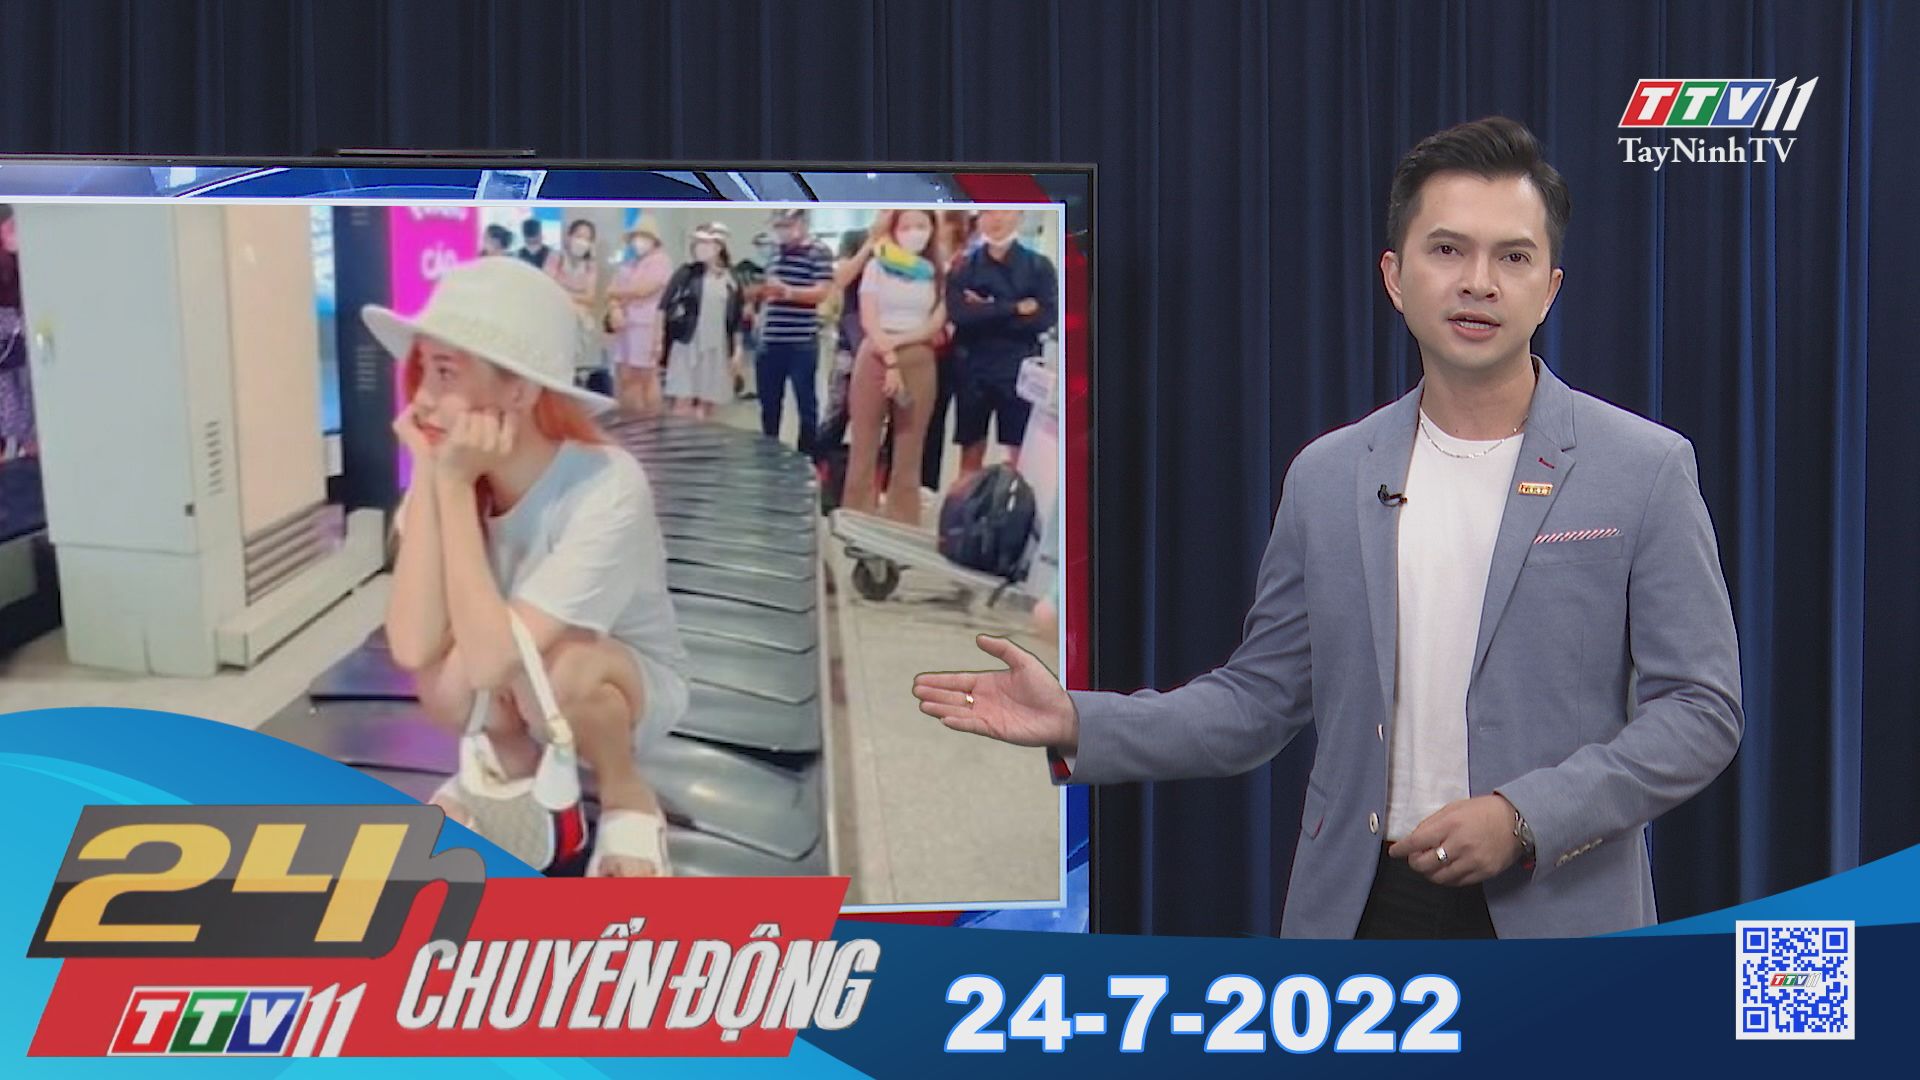 24h Chuyển động 24-7-2022 | Tin tức hôm nay | TayNinhTV